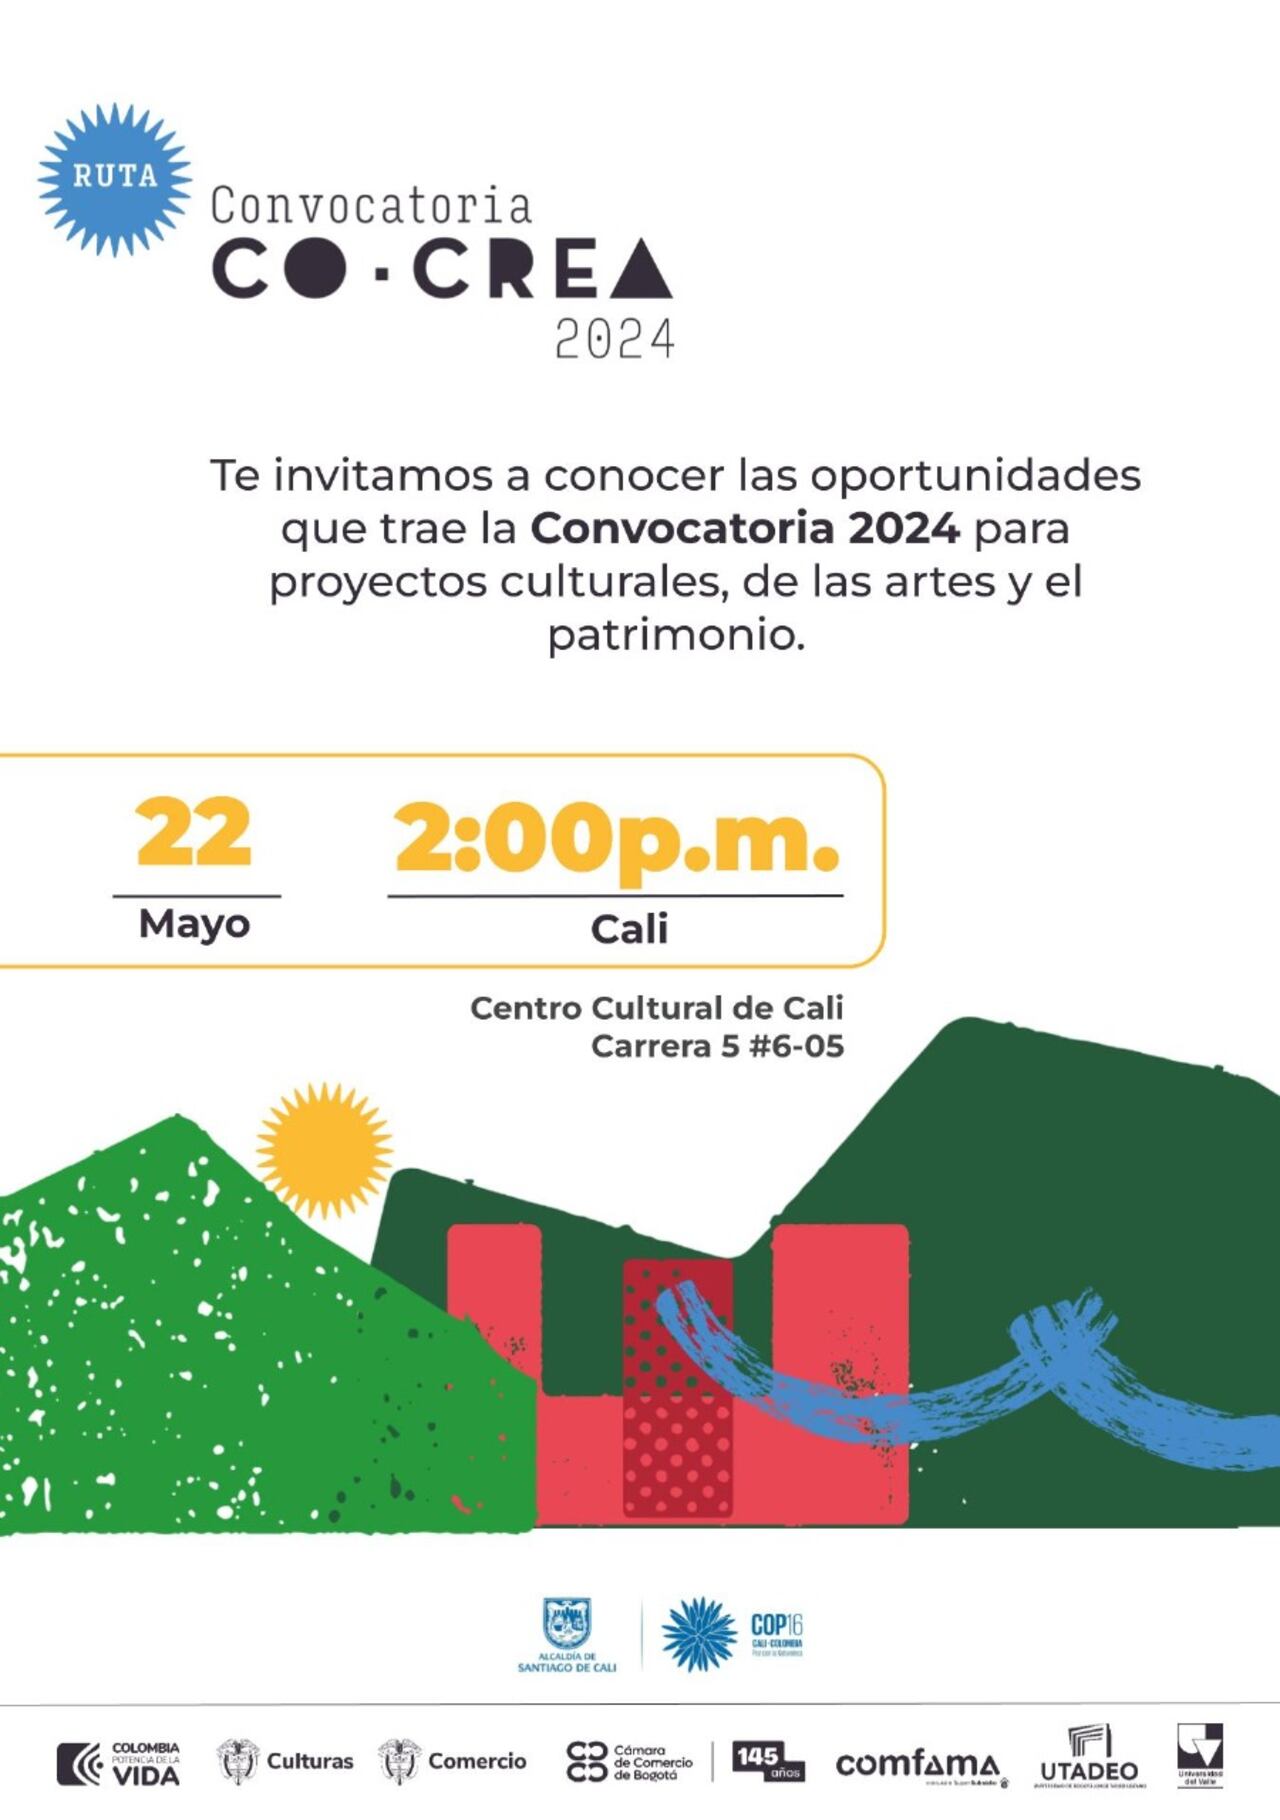 La presentación de la Convocatoria CoCrea 2024 que se llevará a cabo el  miércoles 22 de mayo a las 2:00 p.m. en el Centro Cultural, Carrera 5 #6-05 Secretaria de Cultura de Cali.